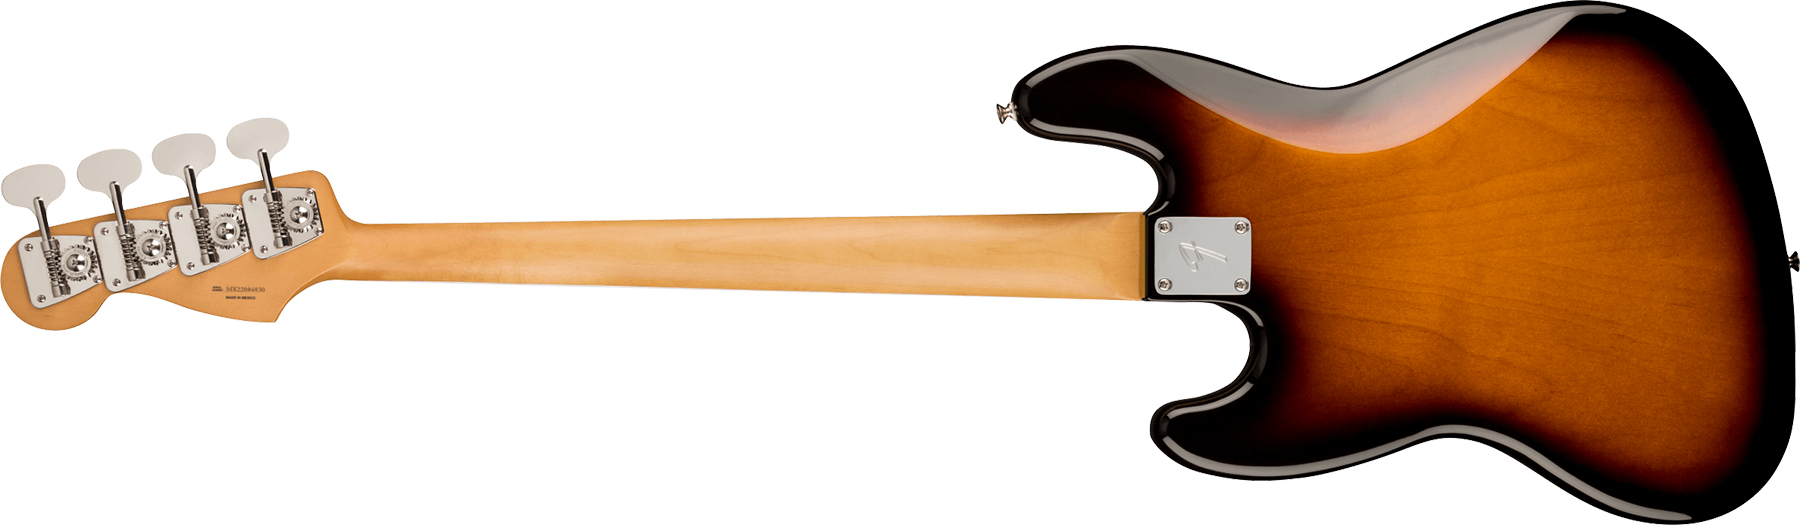 Fender Jazz Bass Gold Foil Ltd Mex Eb - 2-color Sunburst - Bajo eléctrico de cuerpo sólido - Variation 1